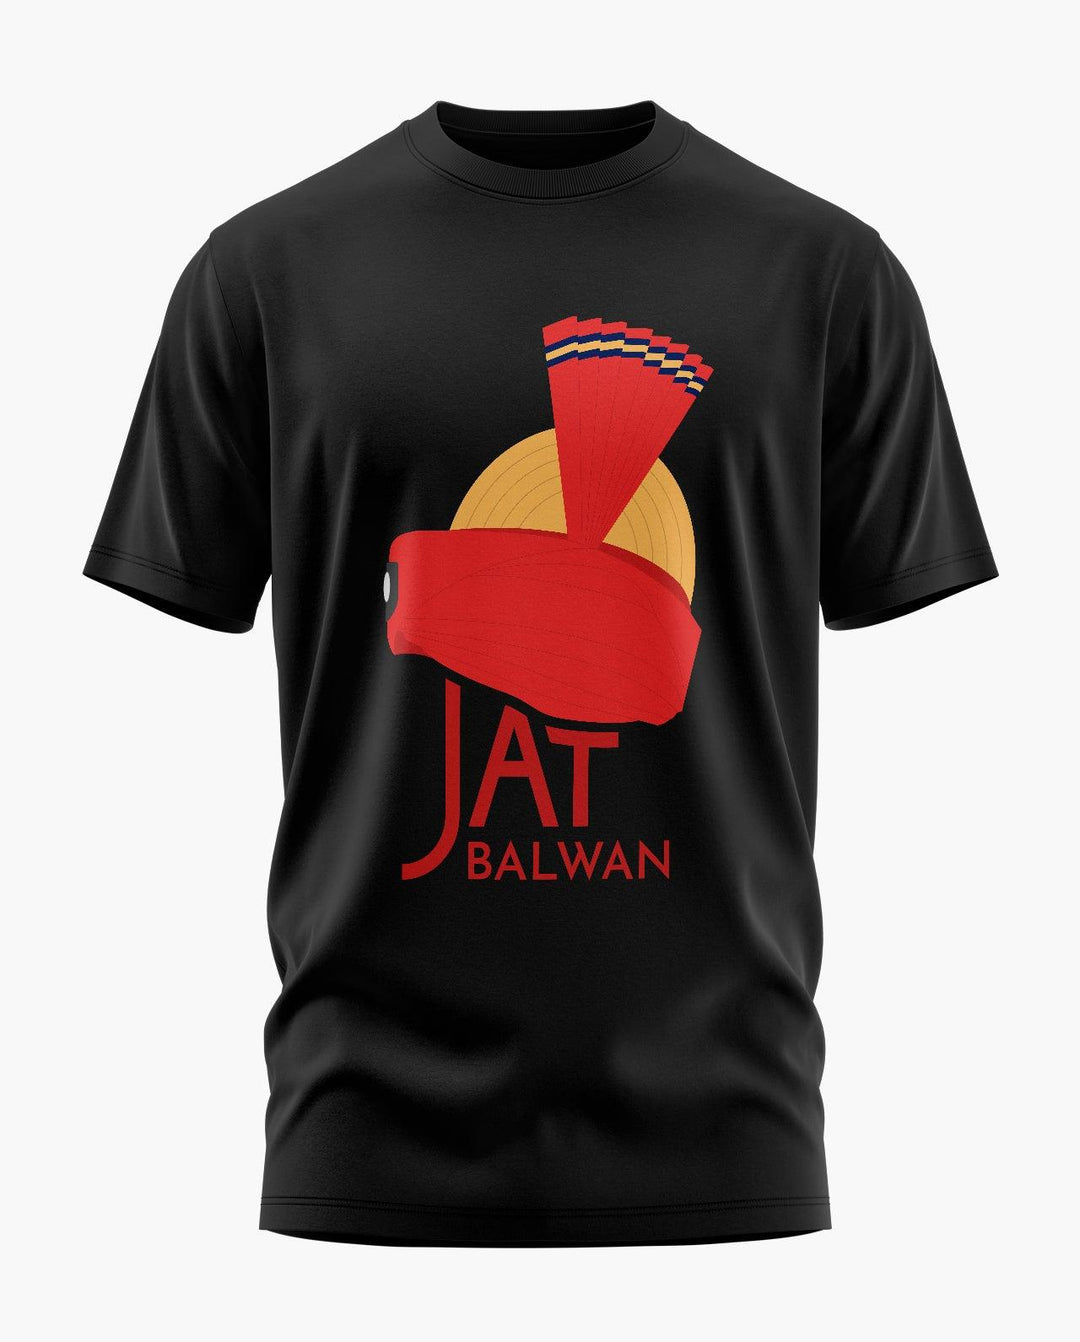 Jat Regiment War Cry T-Shirt - Aero Armour